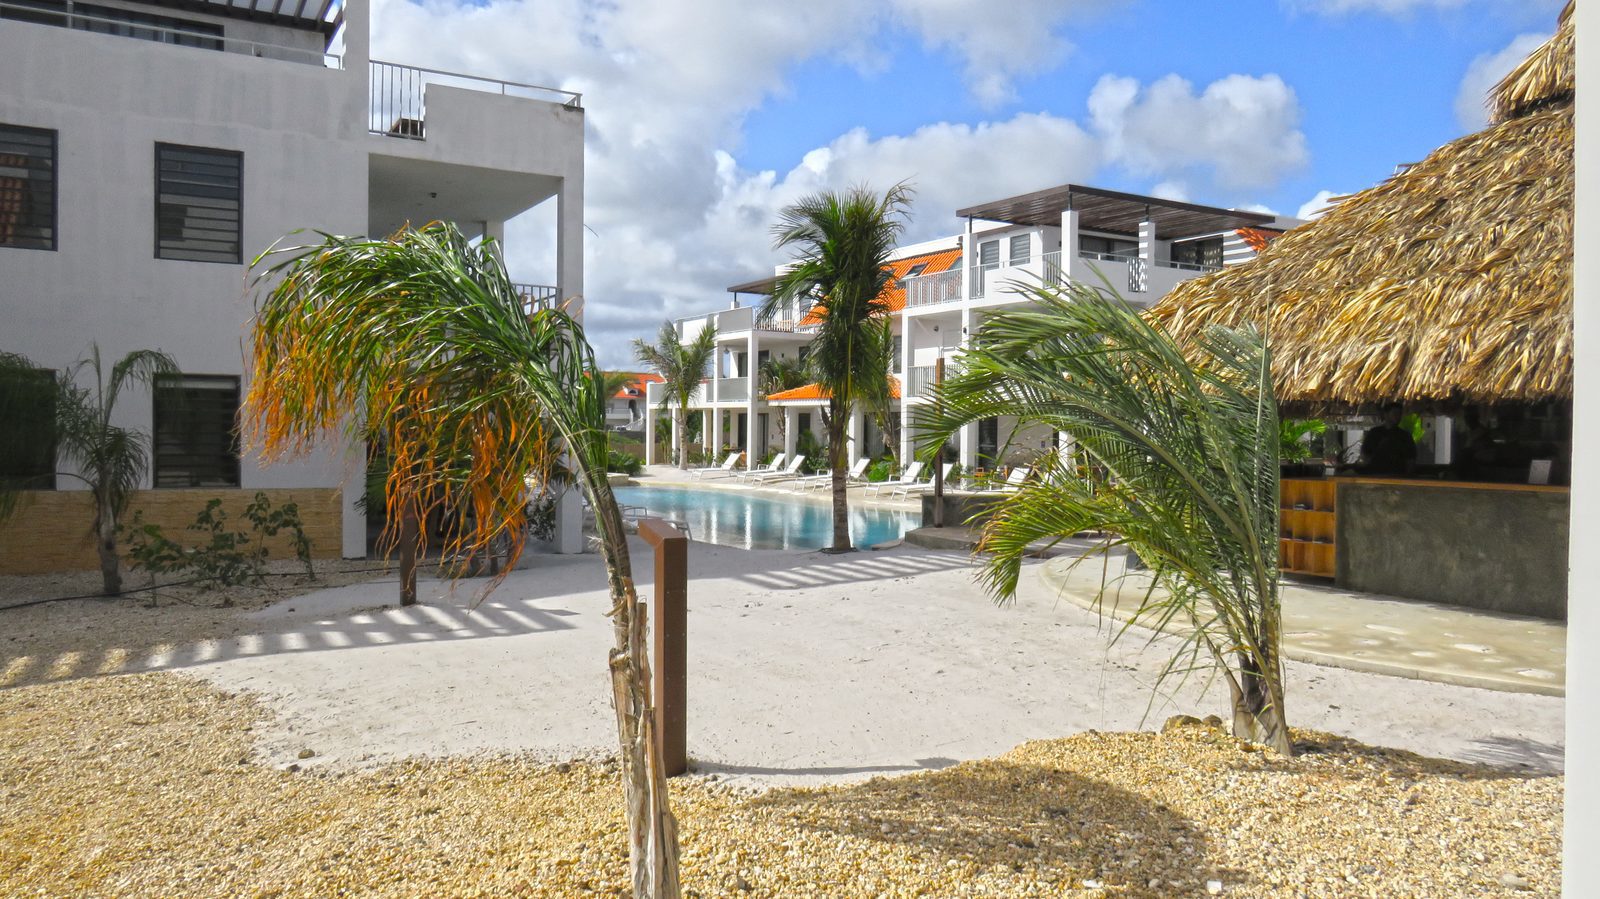 Accommodaties op Bonaire gezocht? Bekijk dan de beschikbare accommodaties op ons resort. Kindvriendelijk, luxe appartementen, voorzien van alles!